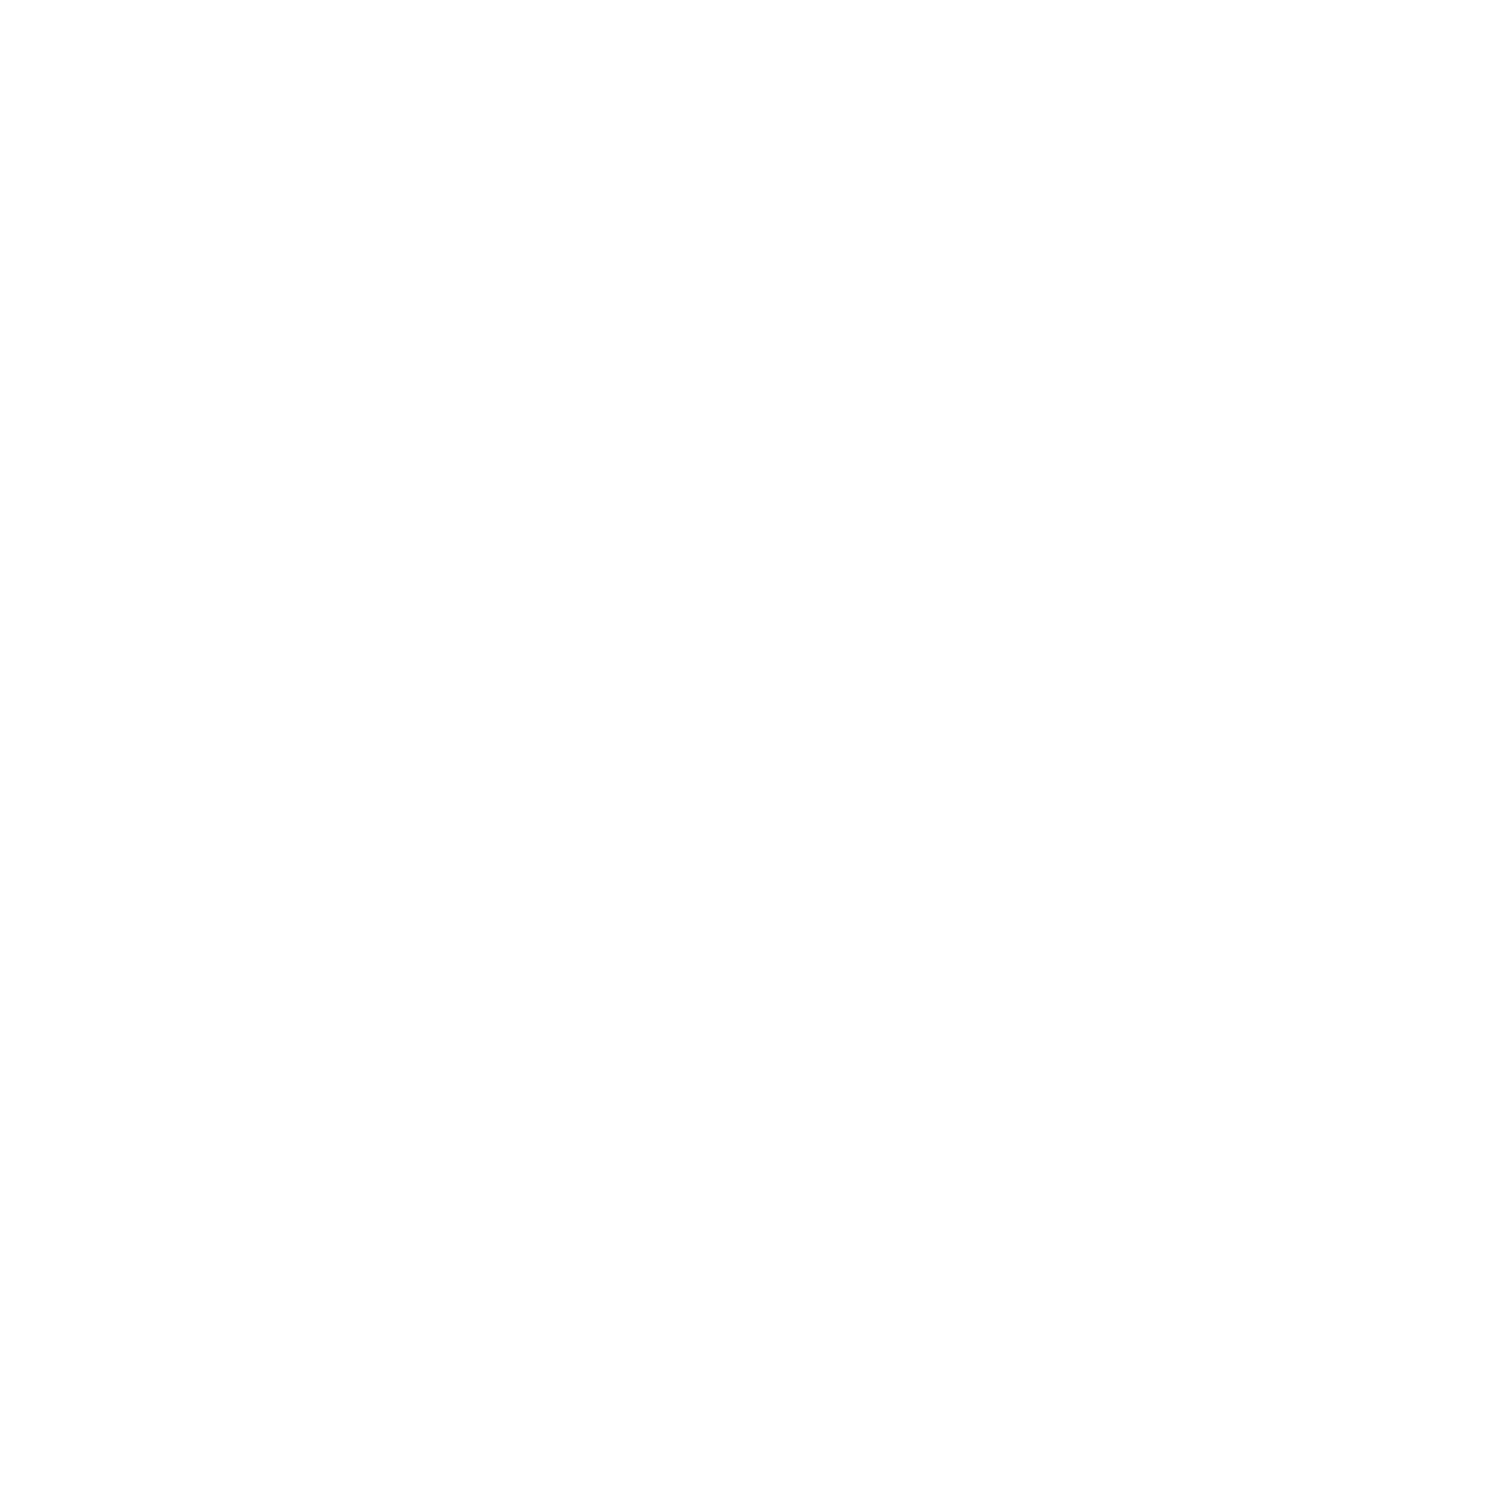 Audiostretto 59/4/24